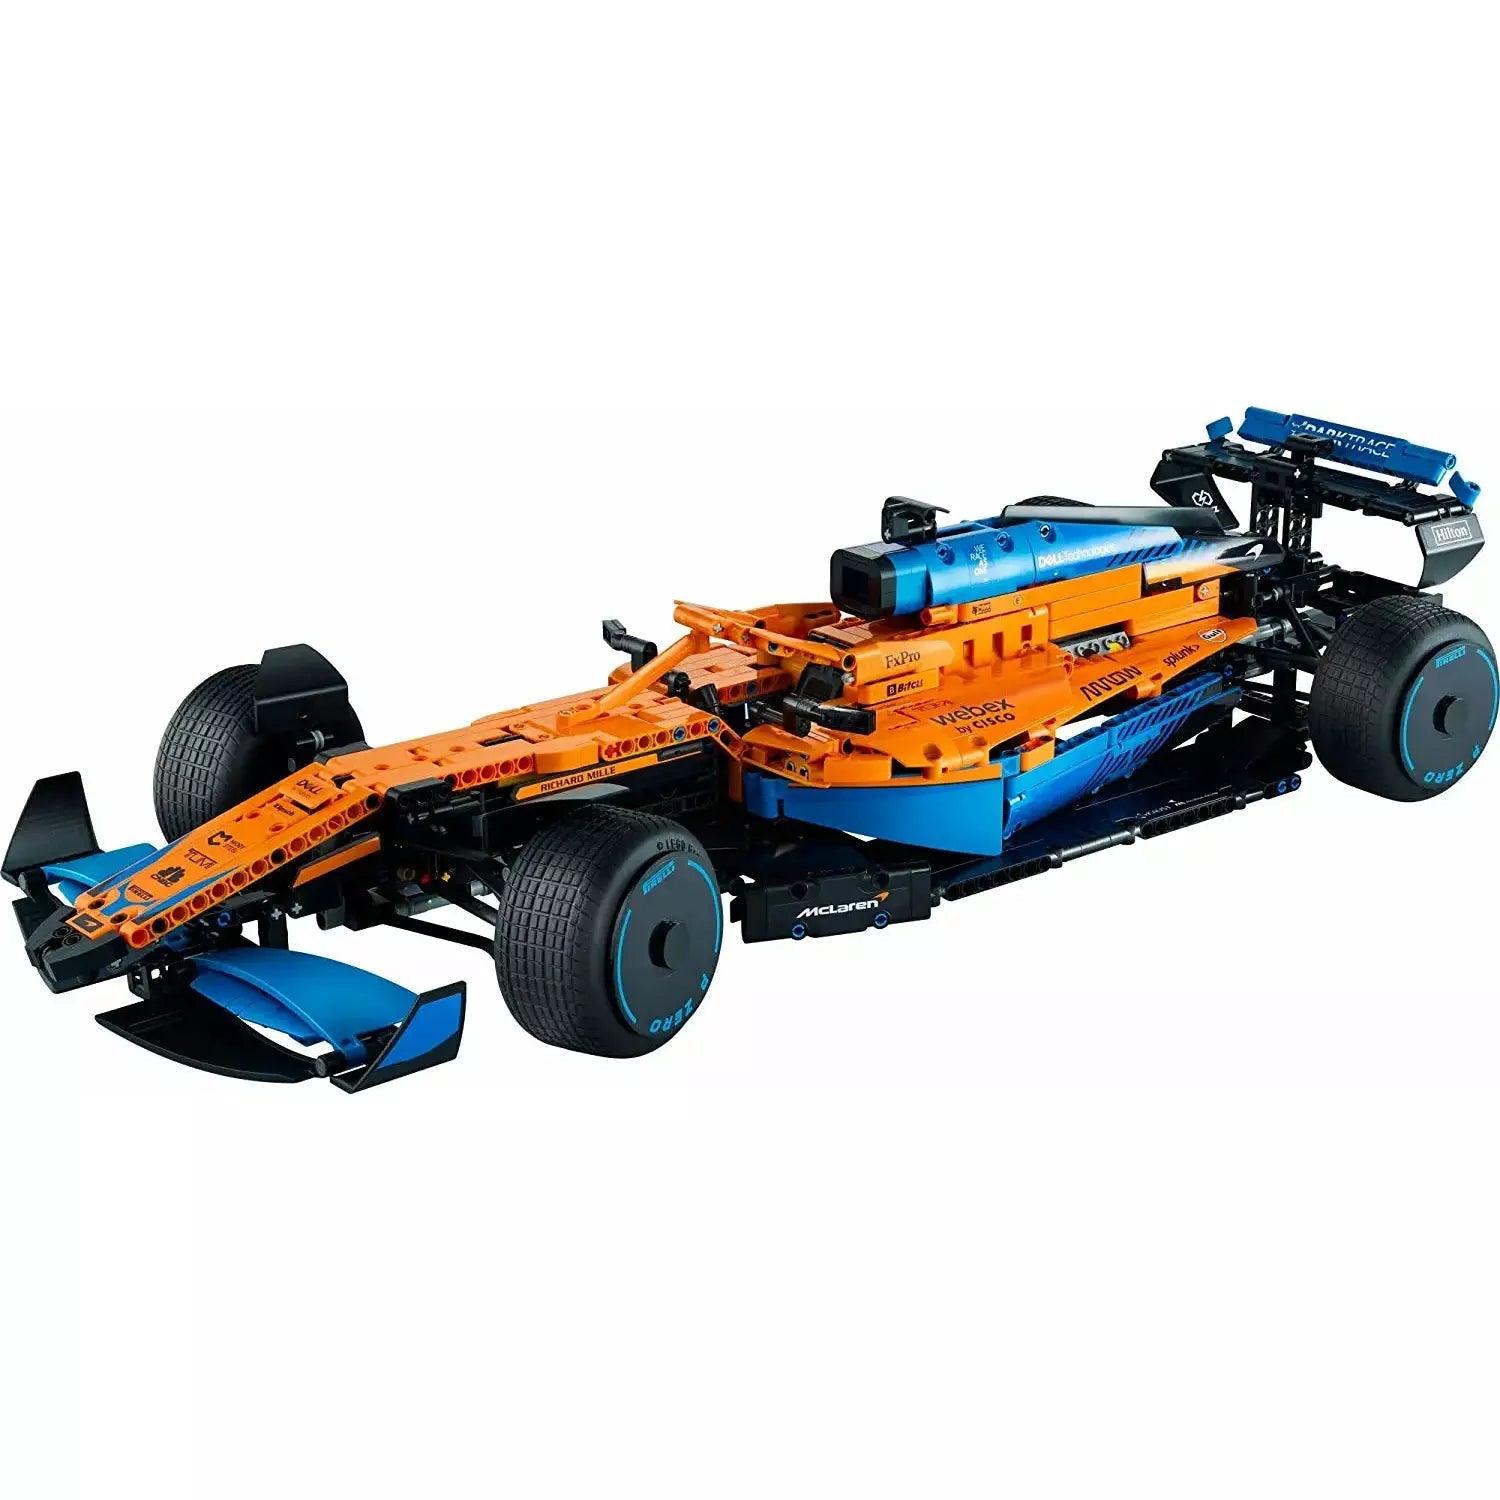 LEGO 42141 Technic McLaren Formula 1 Race Car Build a Replica Model of The 2022 McLaren Formula 1 Race Car (1,432 Pieces) - BumbleToys - 18+, 5-7 Years, Boys, LEGO, OXE, Pre-Order, Technic